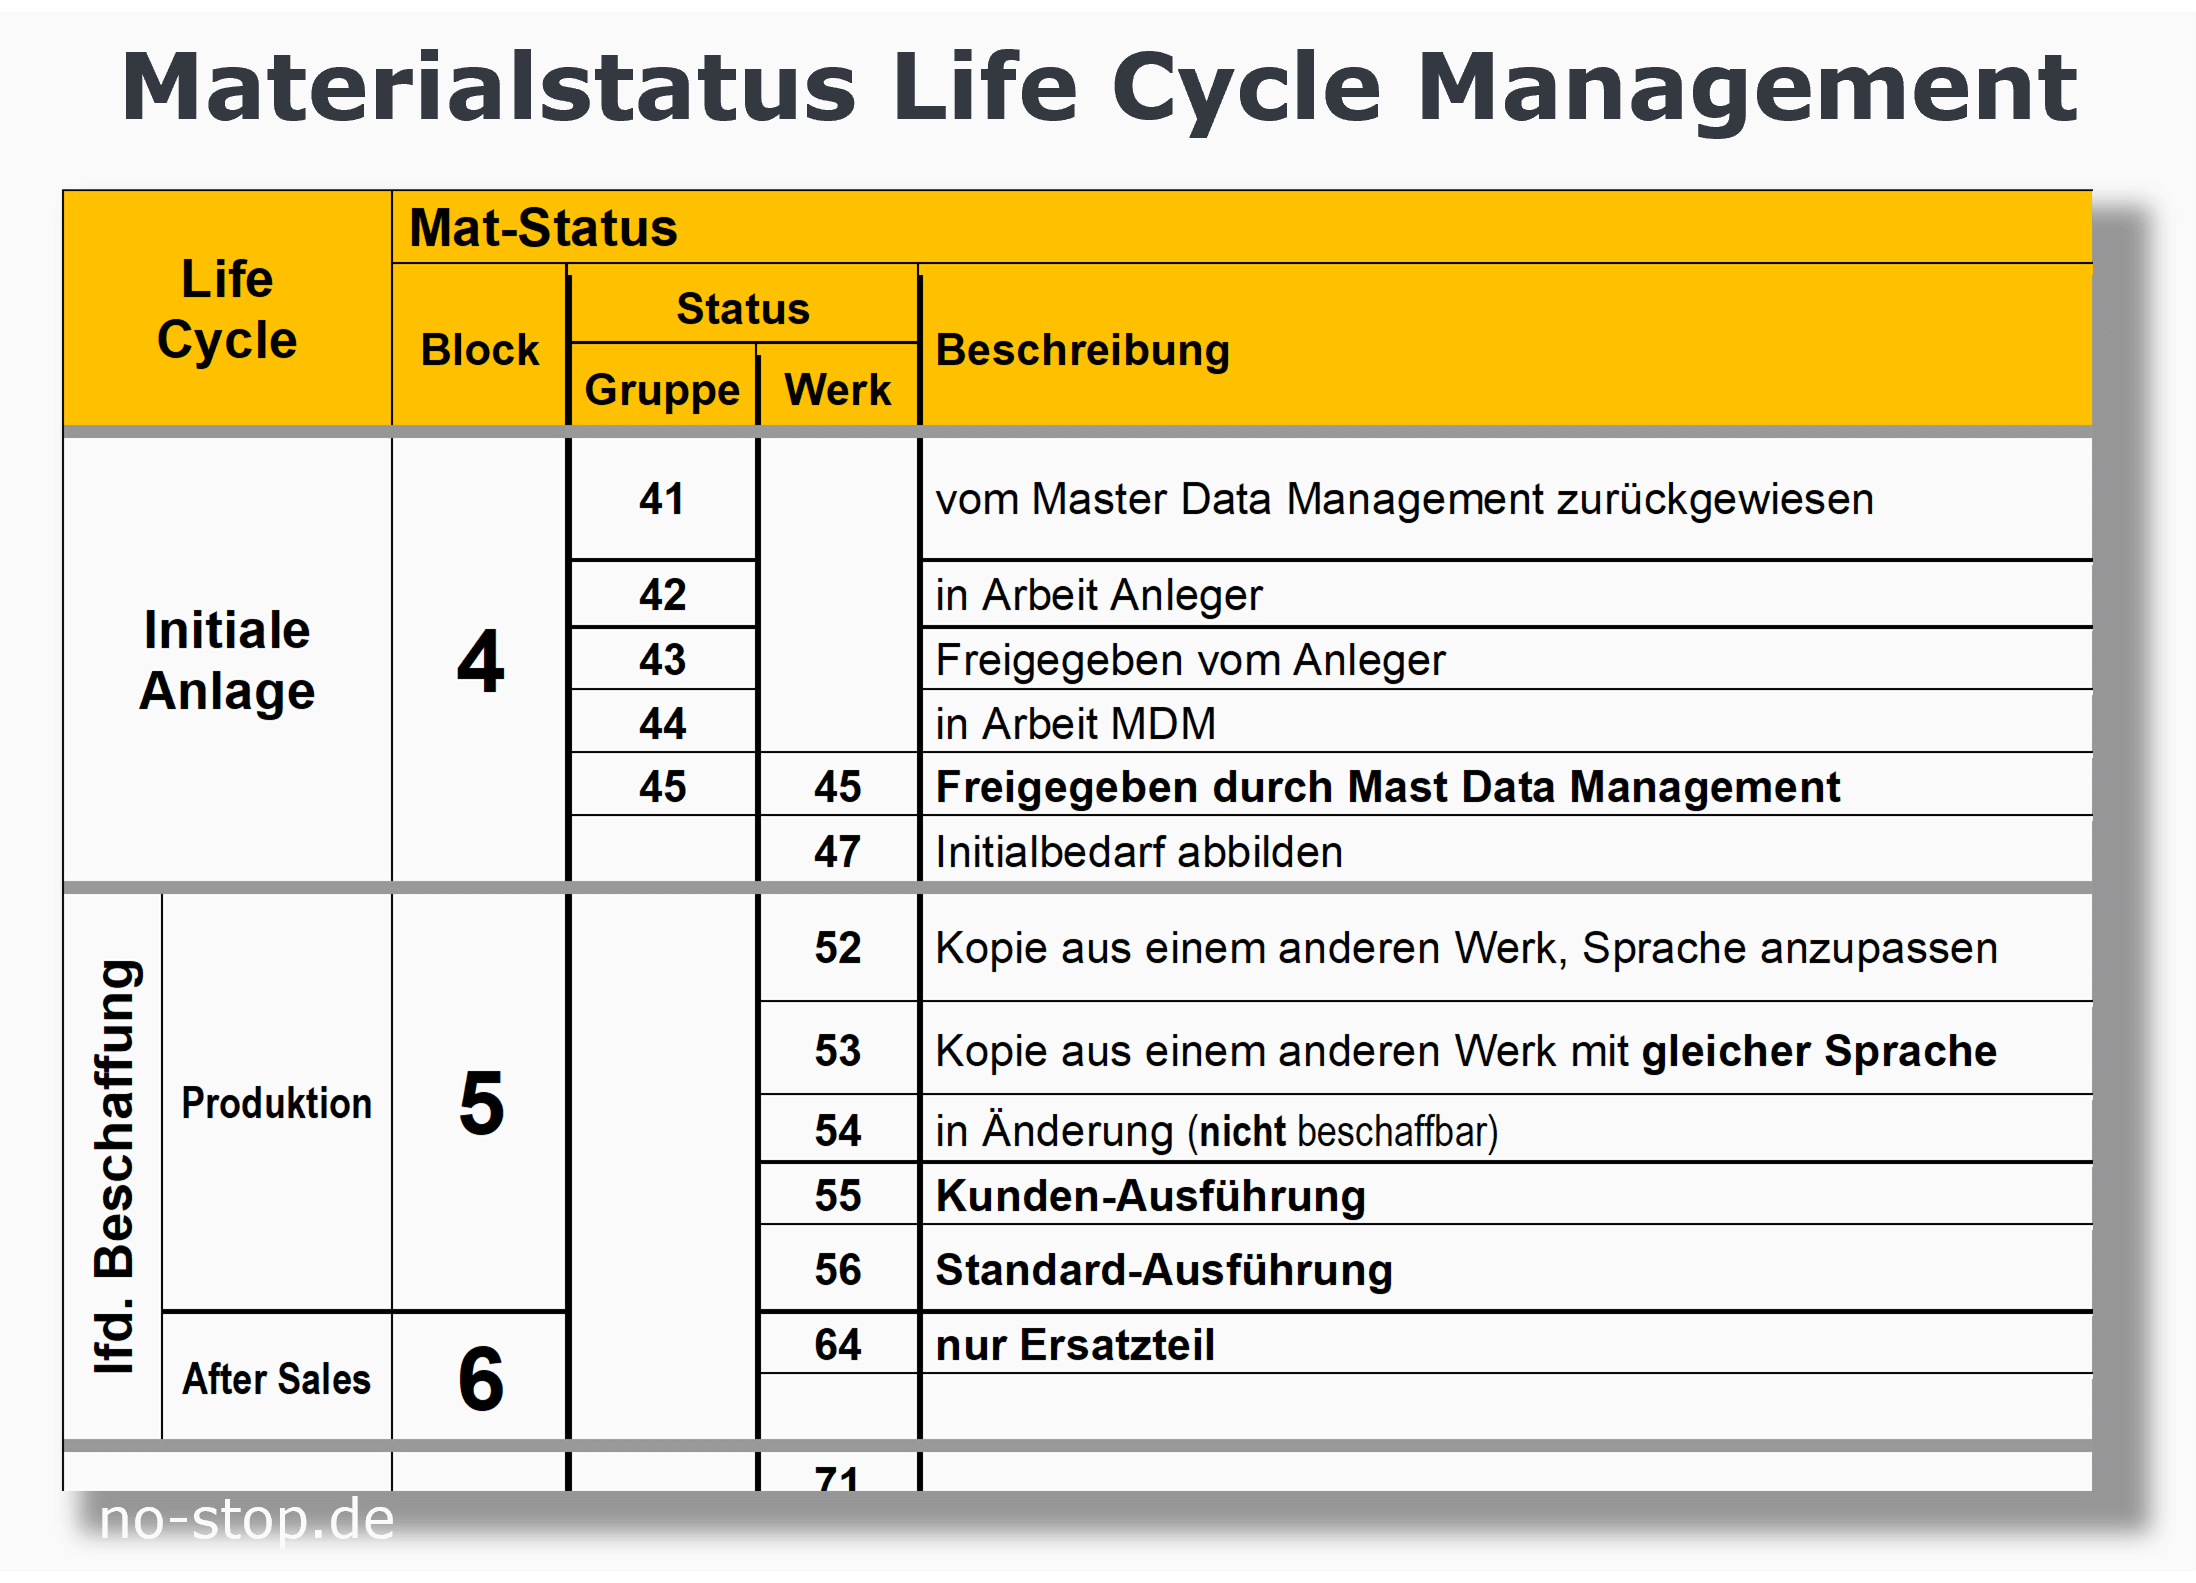 Materialstatus Life Cycle Management durch Unternehmensberatung unterstützt pflegen